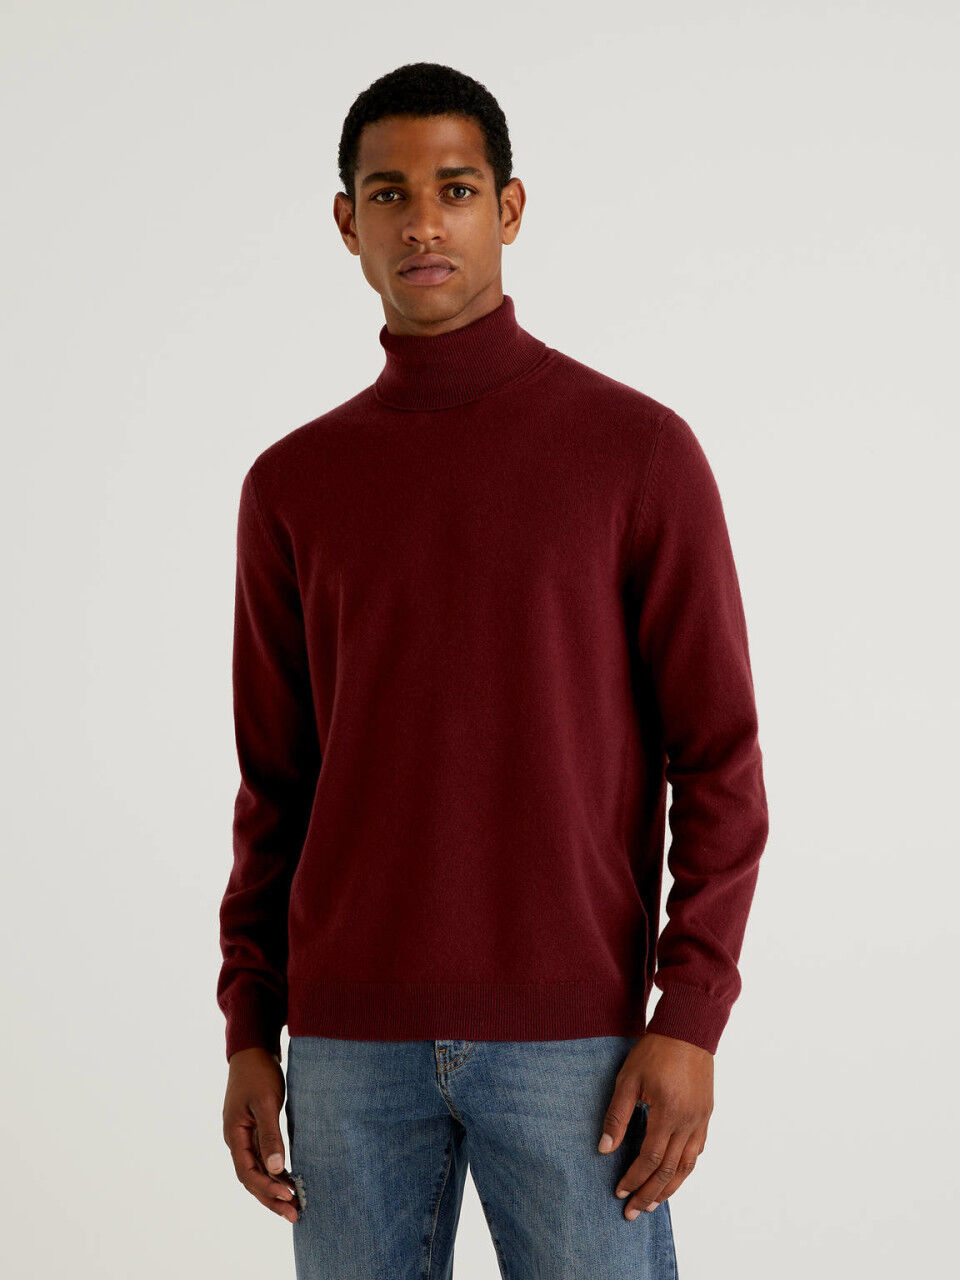 IDEALSANXUN Mens Seniors Wool Blend Loose Fit Sweater High Neck Warm Pullovers 